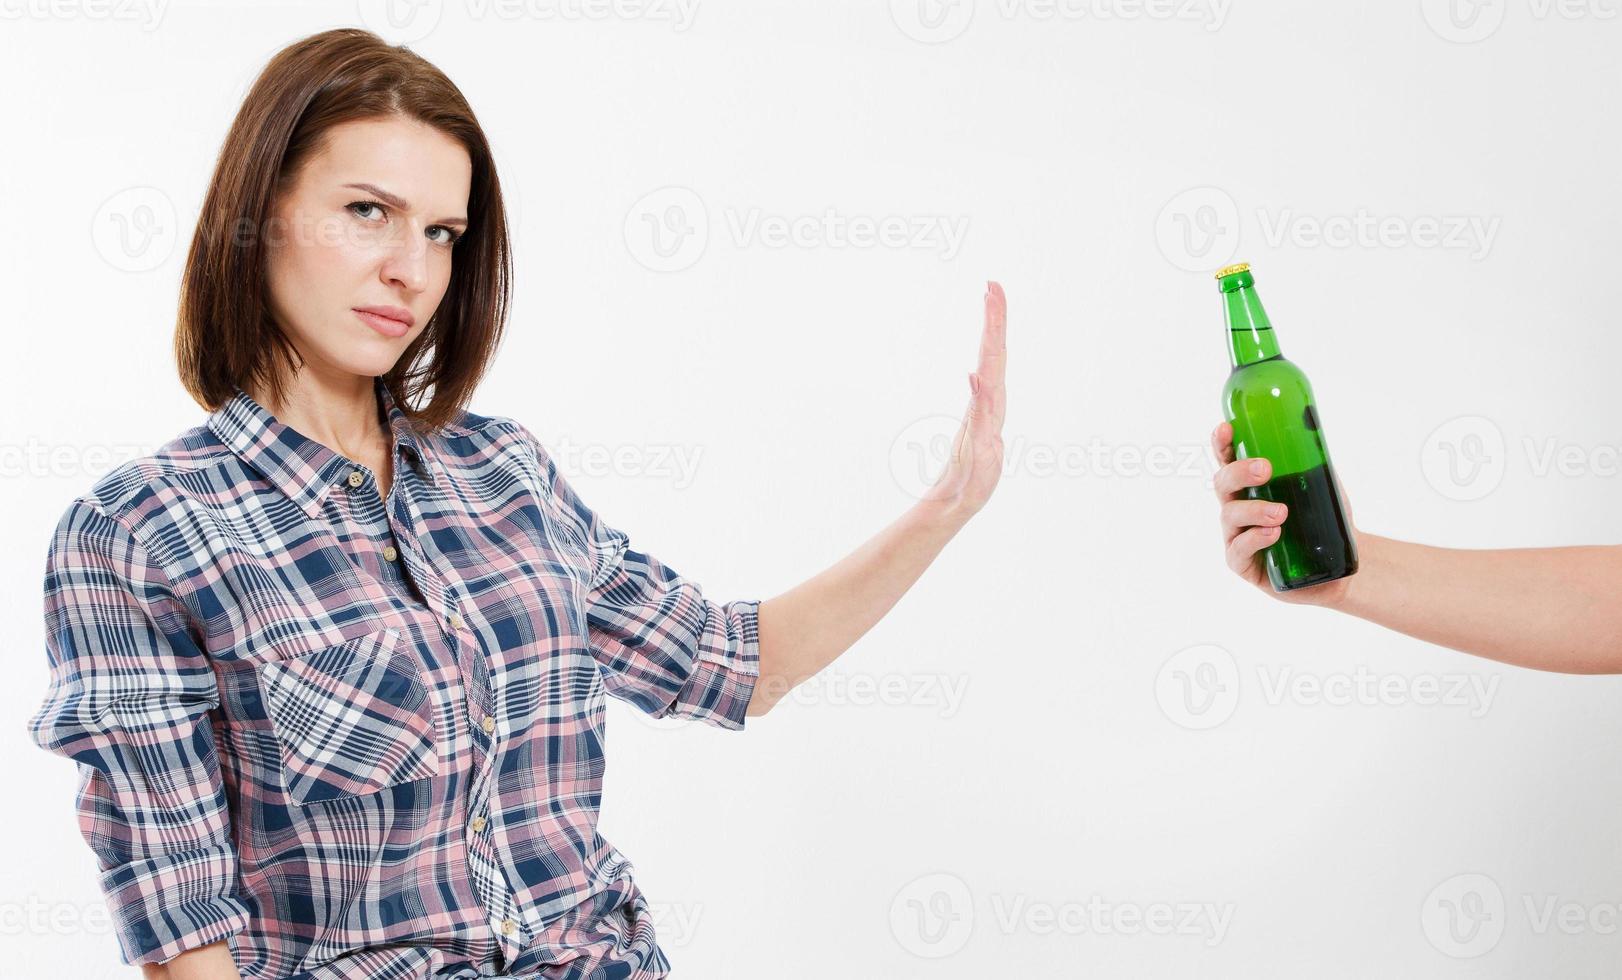 bevanda alcolica rifiutata femminile isolata su priorità bassa bianca. concetto anti-alcol. copia spazio isolato foto